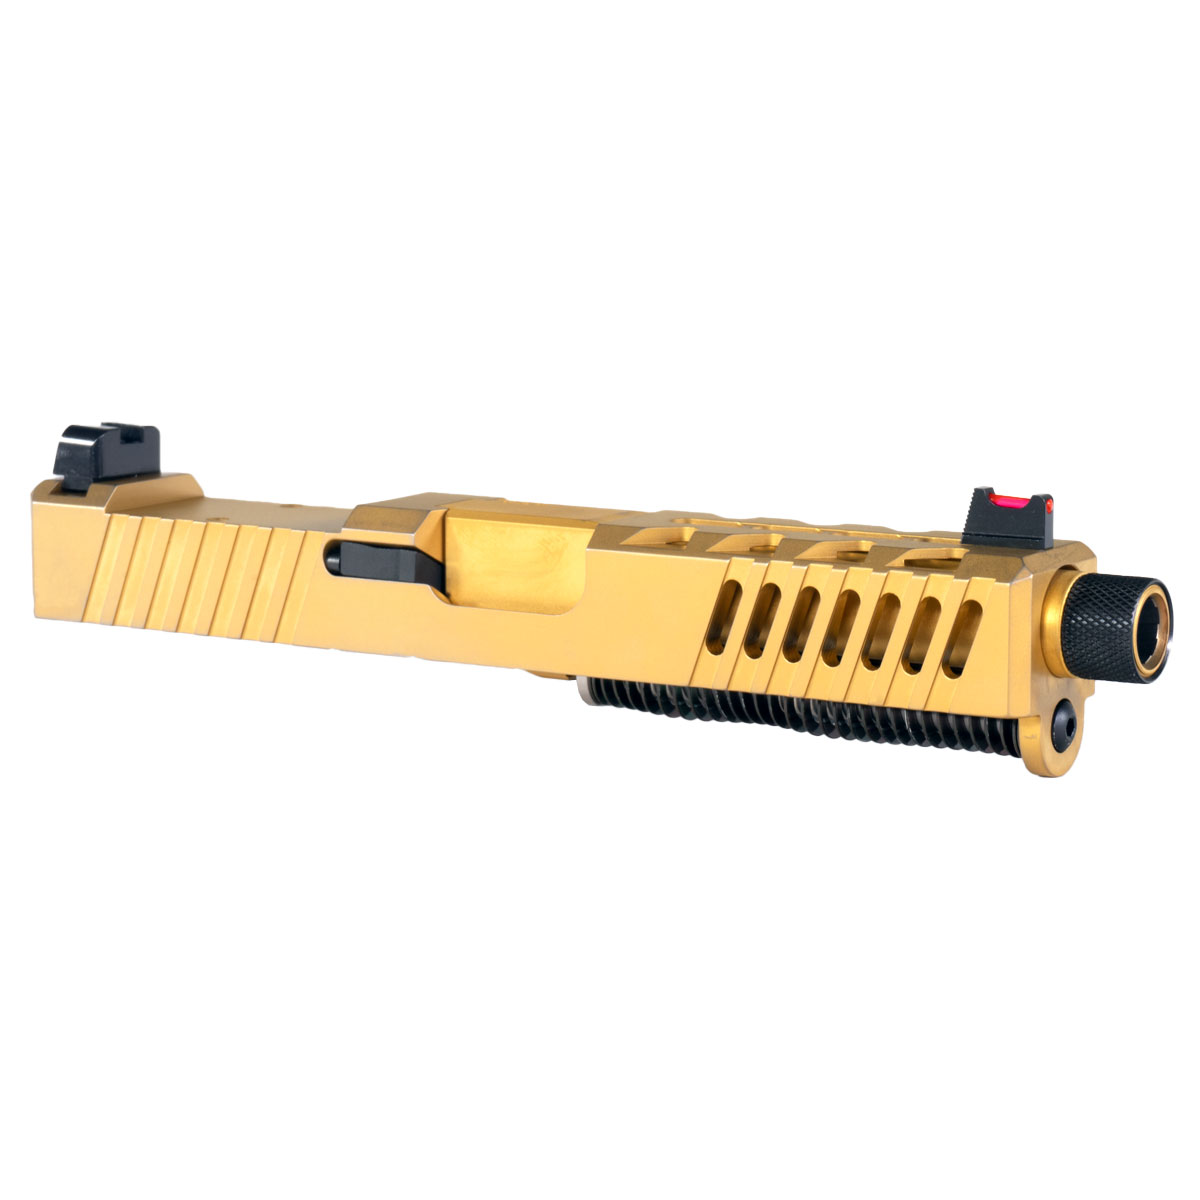 OTD 'AU-197' 9mm Complete Slide Kit - Glock 19 Gen 1-3 Compatible